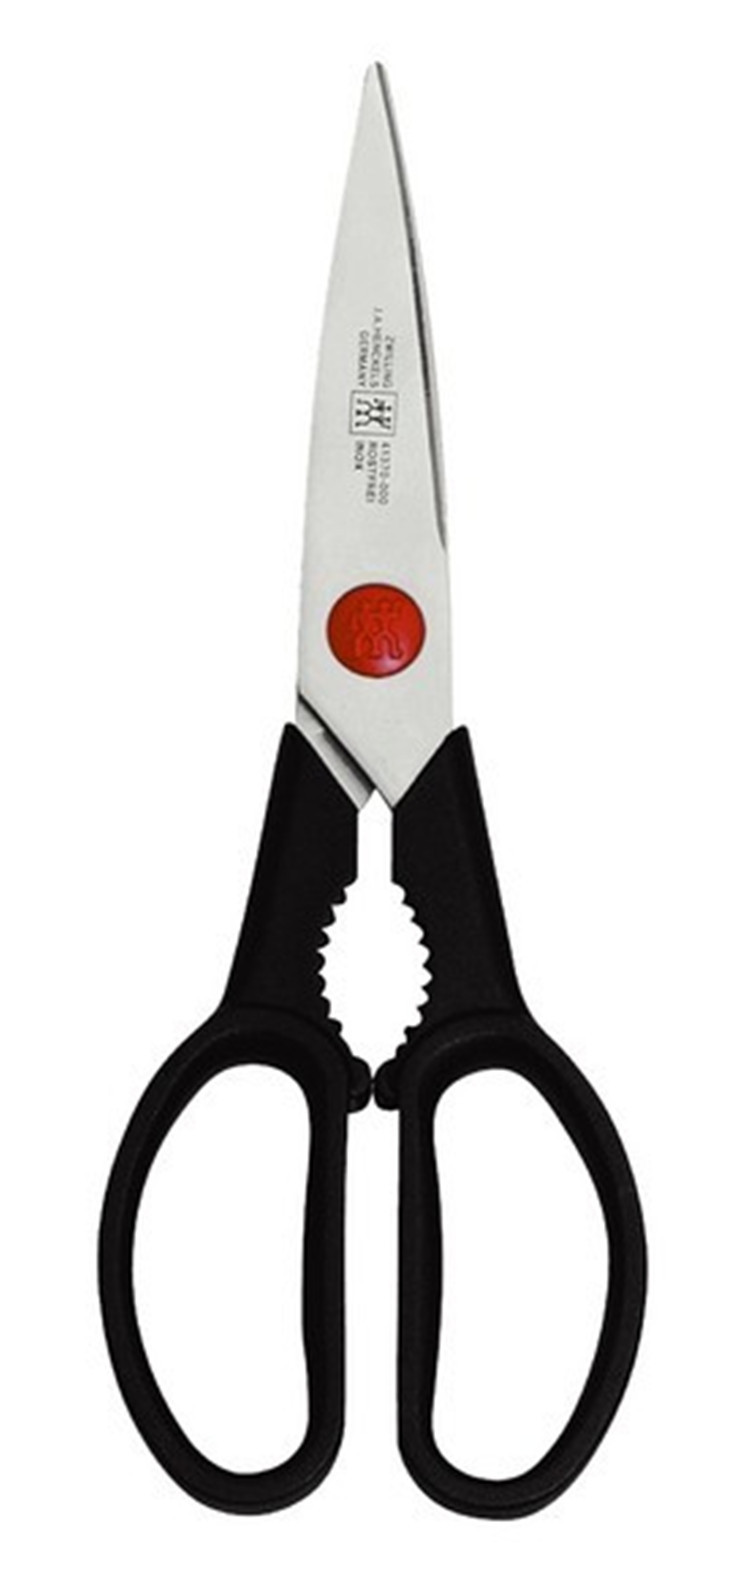 生产销售 德国双立人红点剪刀TWIN L厨房多用剪刀 41371-010批零